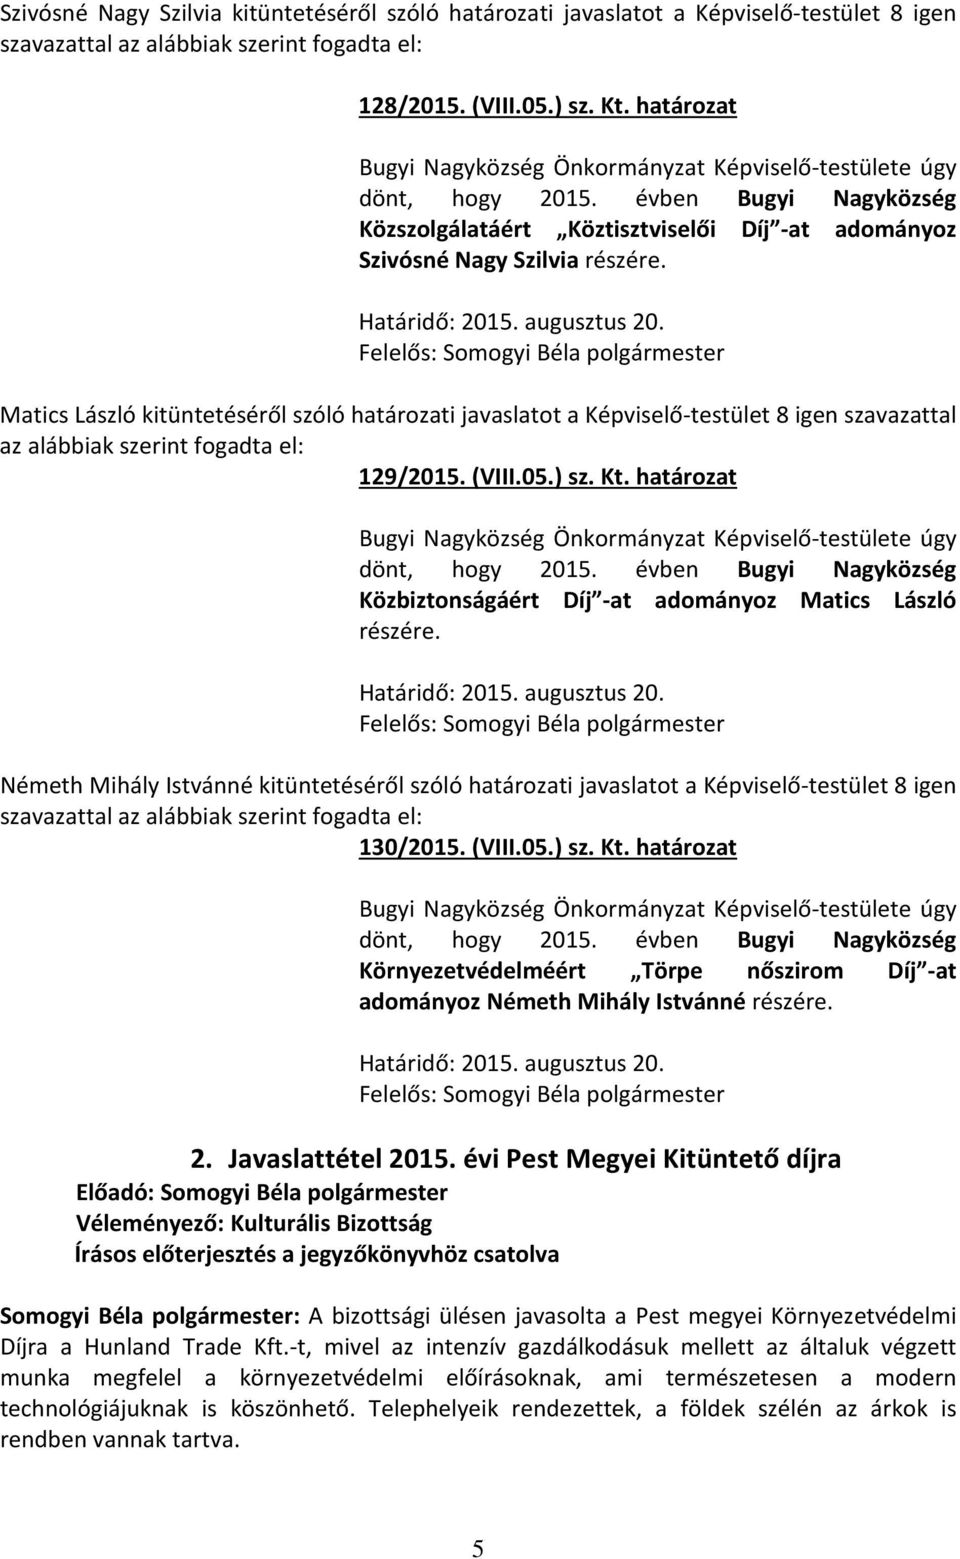 Matics László kitüntetéséről szóló határozati javaslatot a Képviselő-testület 8 igen szavazattal az alábbiak szerint fogadta el: 129/2015. (VIII.05.) sz. Kt. határozat dönt, hogy 2015.